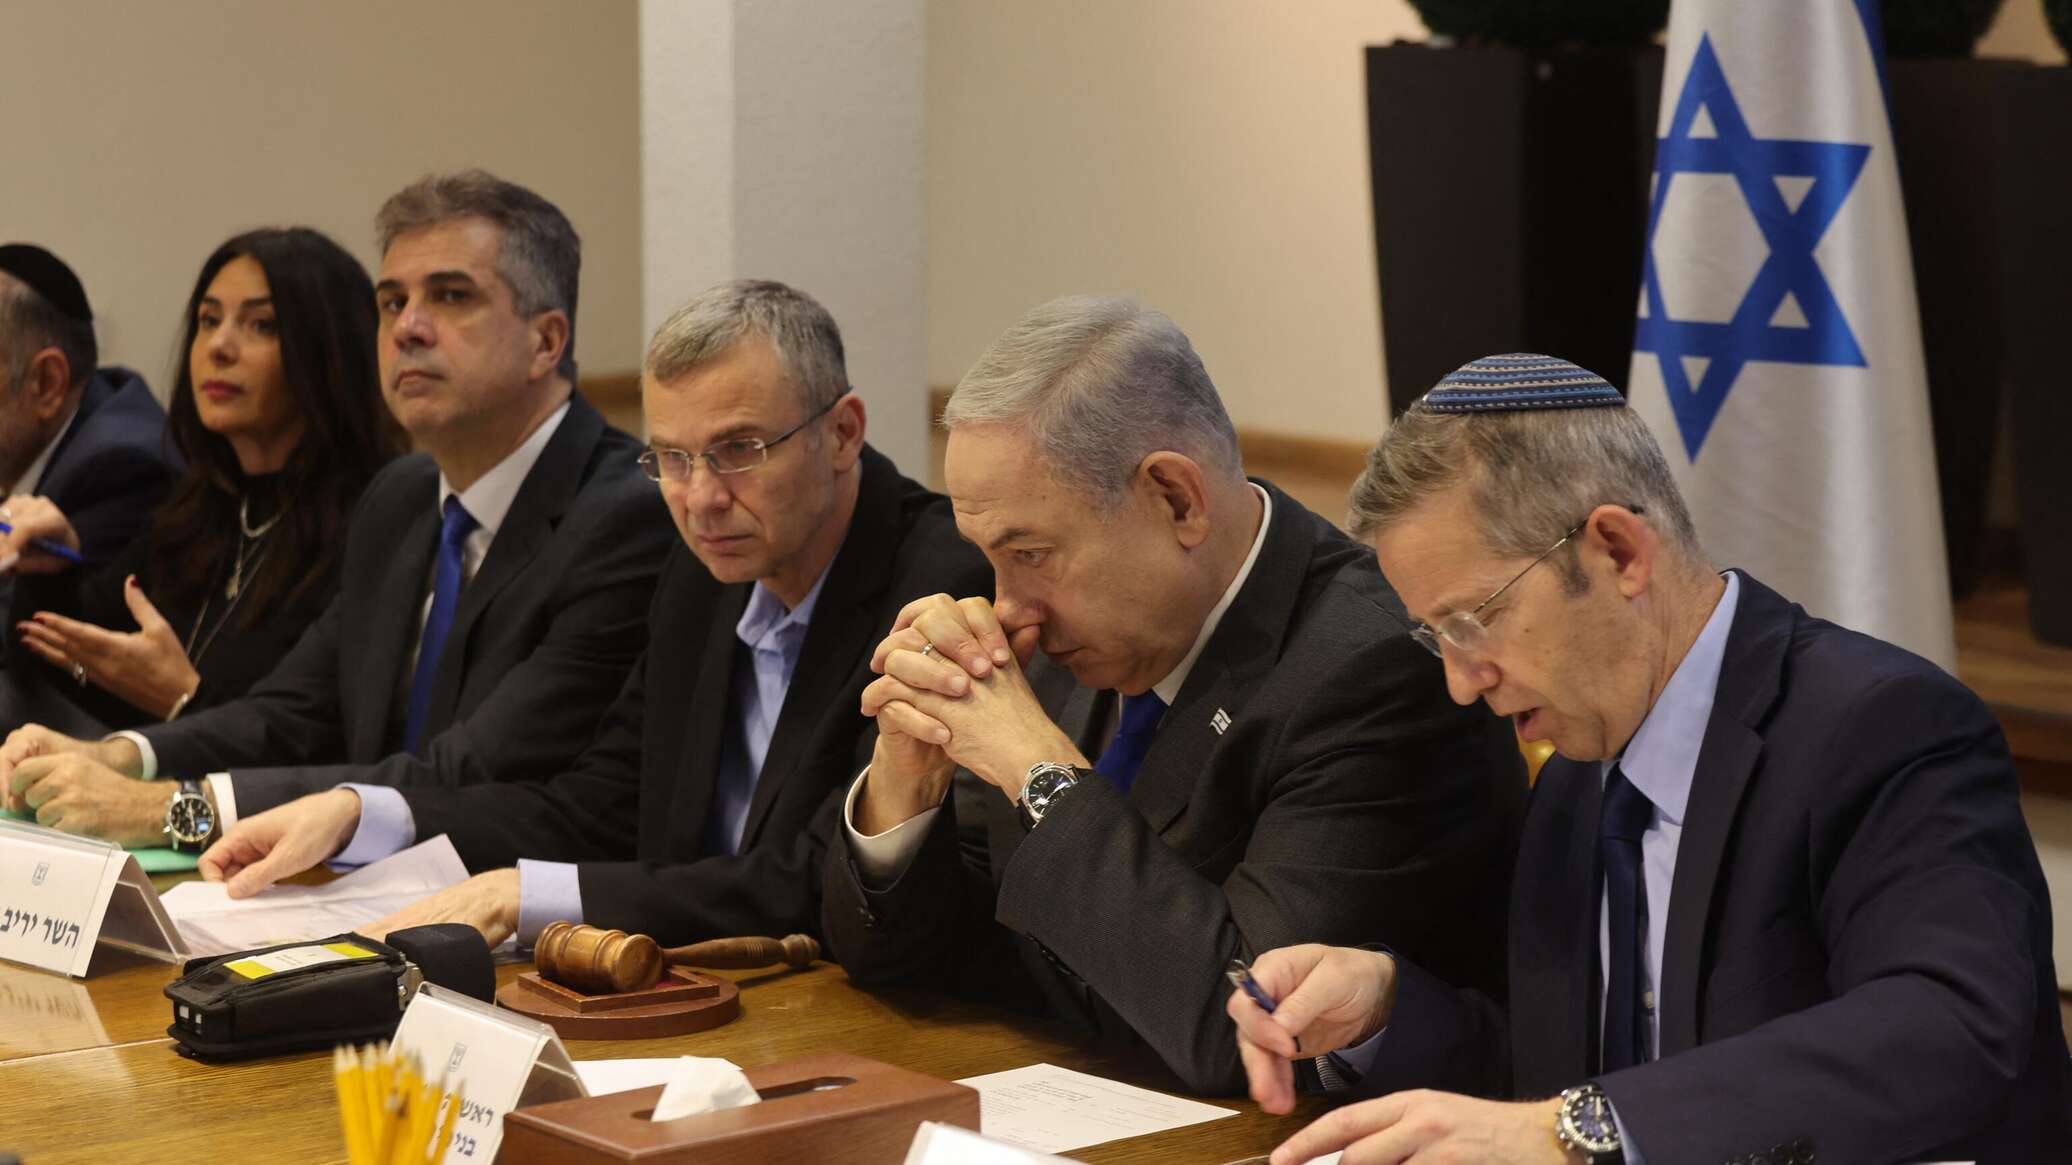 الإذاعة الإسرائيلية: نتنياهو يخرب المفاوضات مع "حماس" بشكل واضح ولا يريد إتمام الصفقة